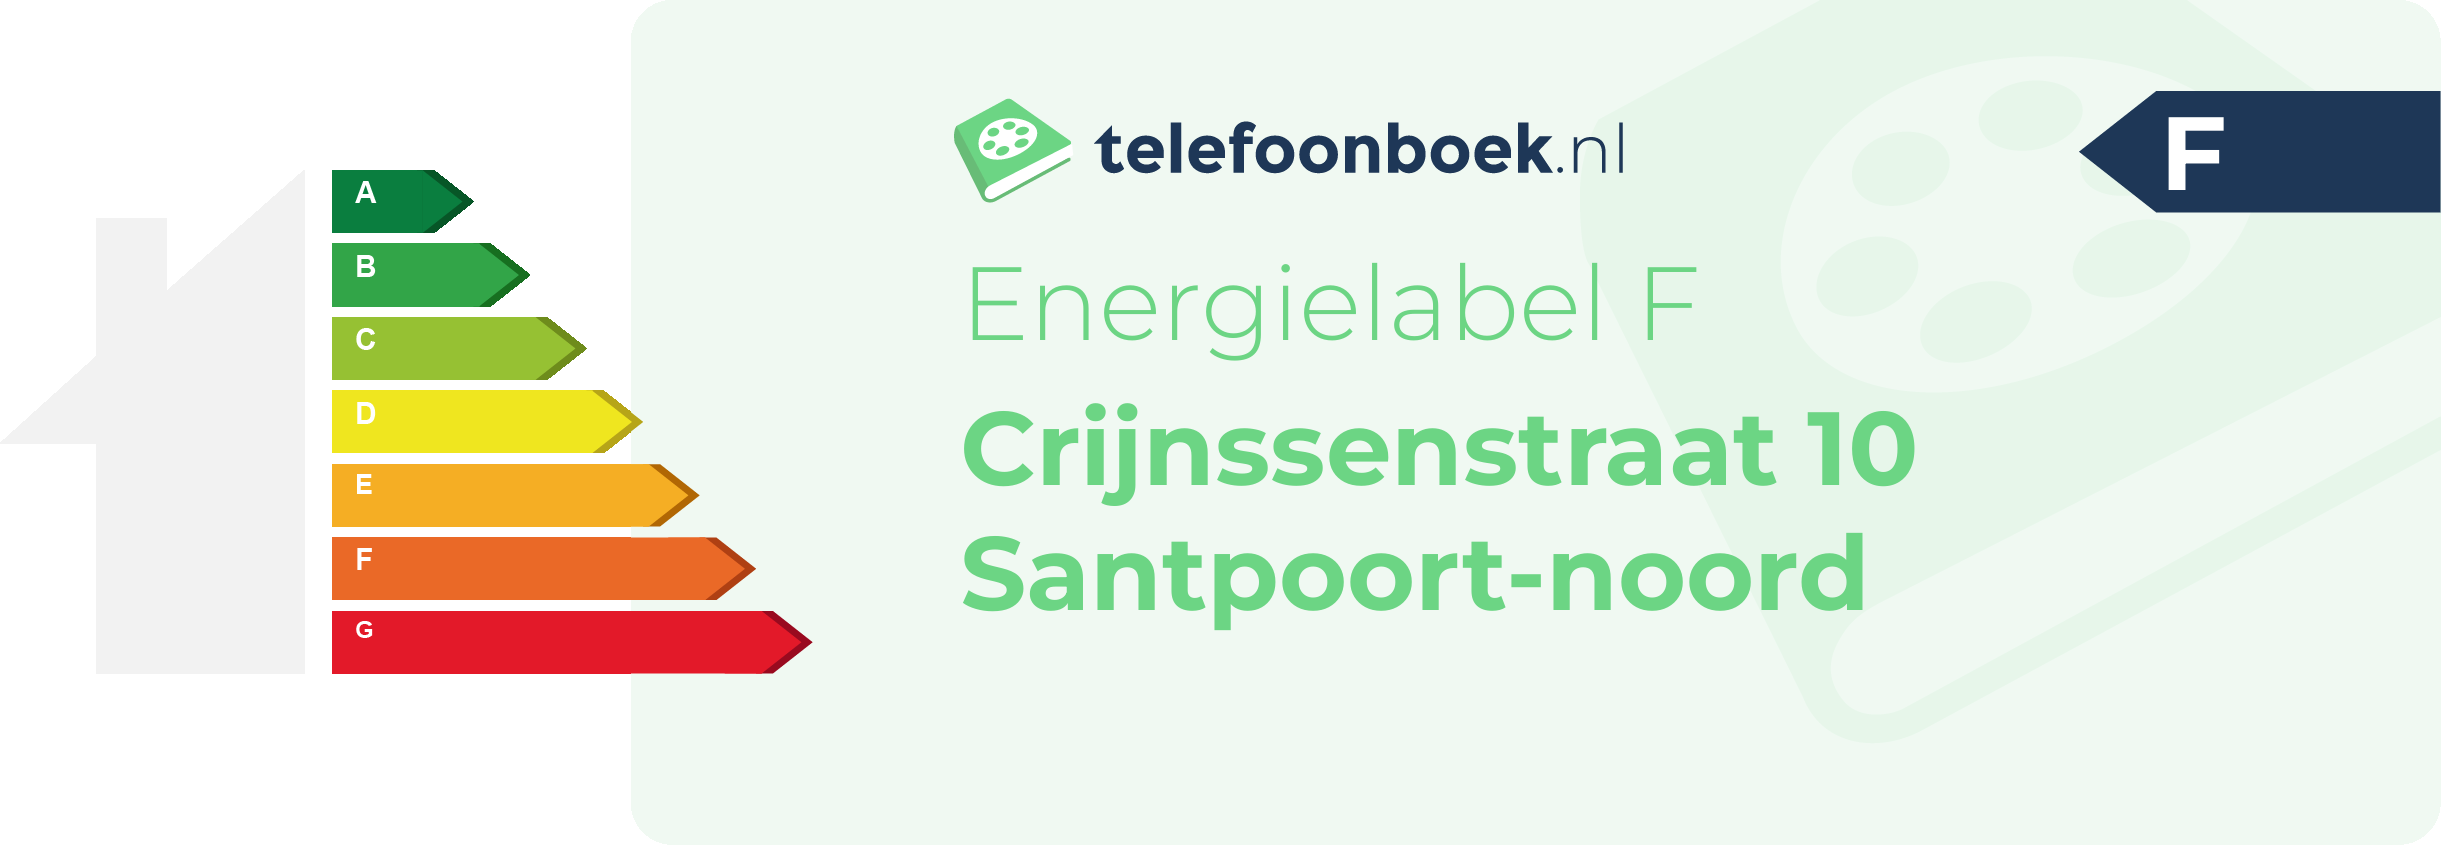 Energielabel Crijnssenstraat 10 Santpoort-Noord